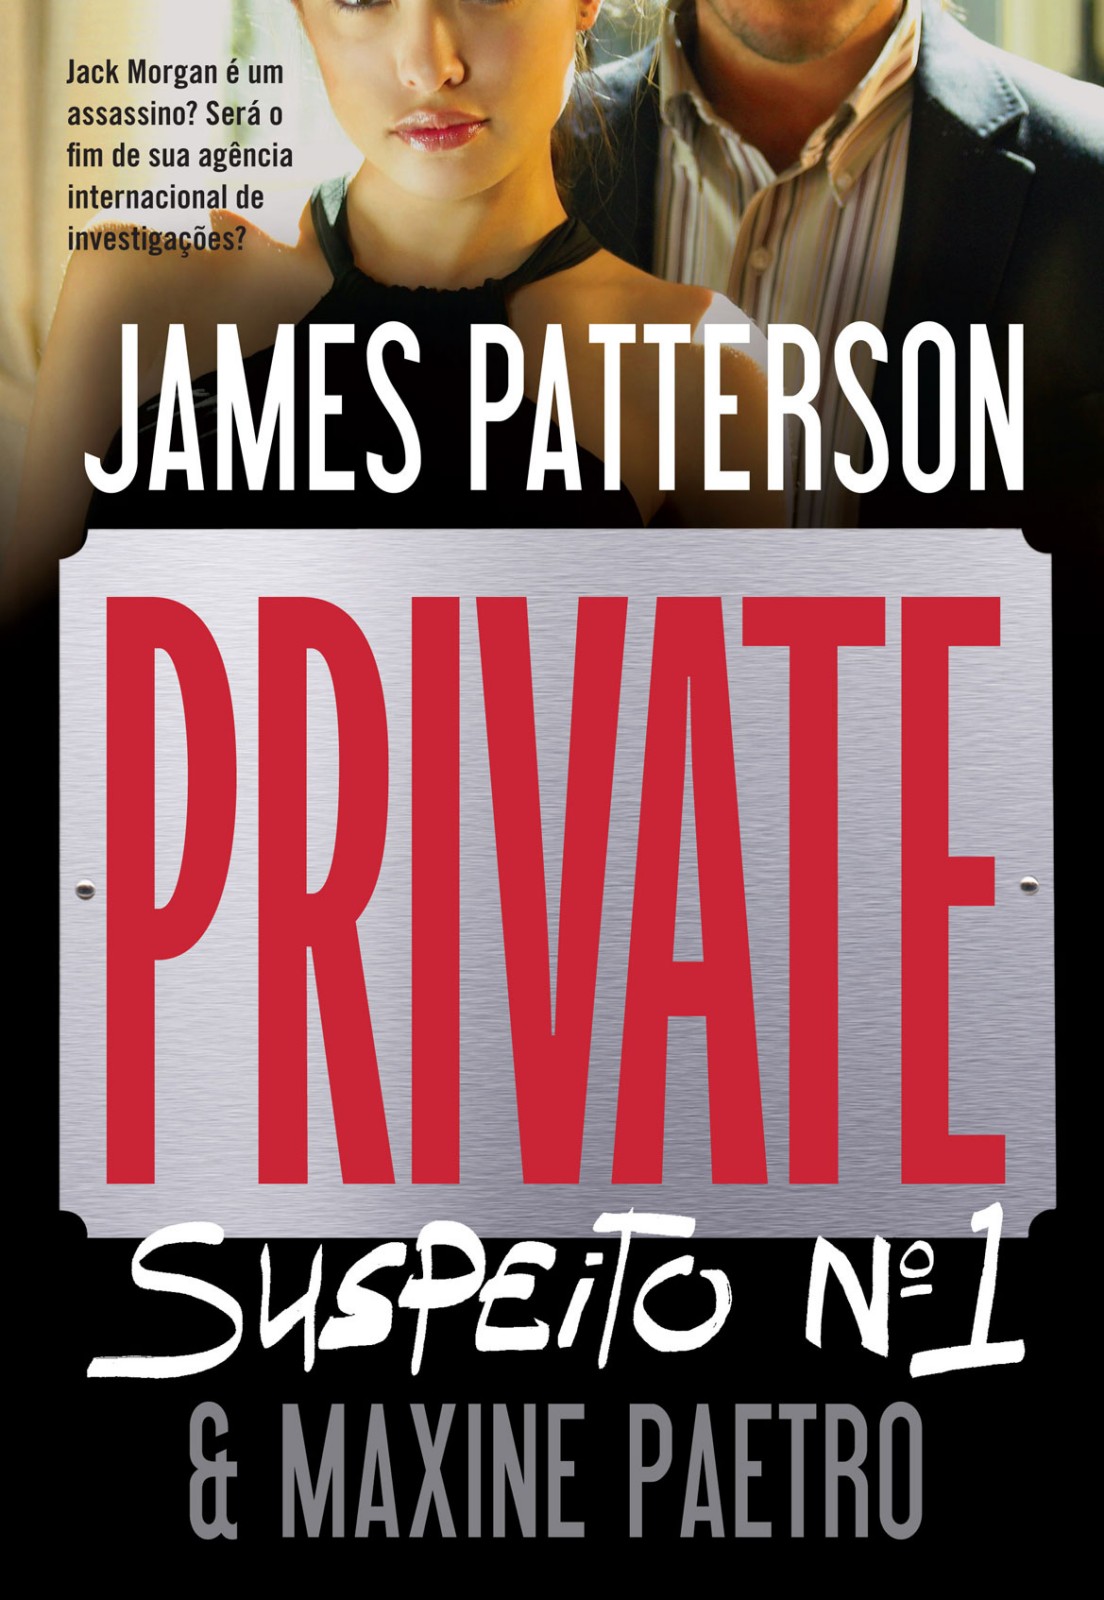 Private: Suspeito Nro 1